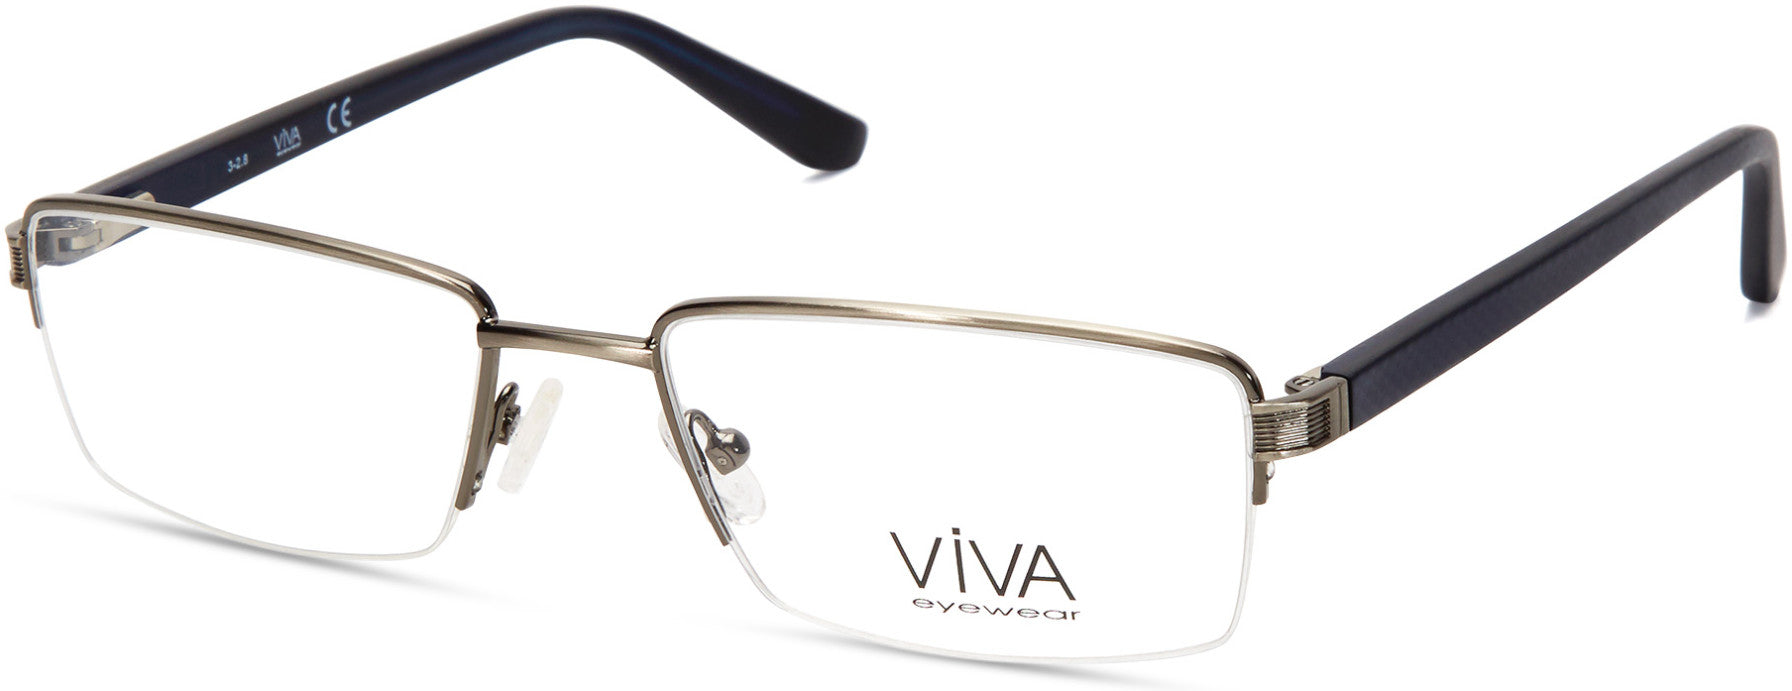 Viva VV4039 Eyeglasses 008-008 - Shiny Gunmetal